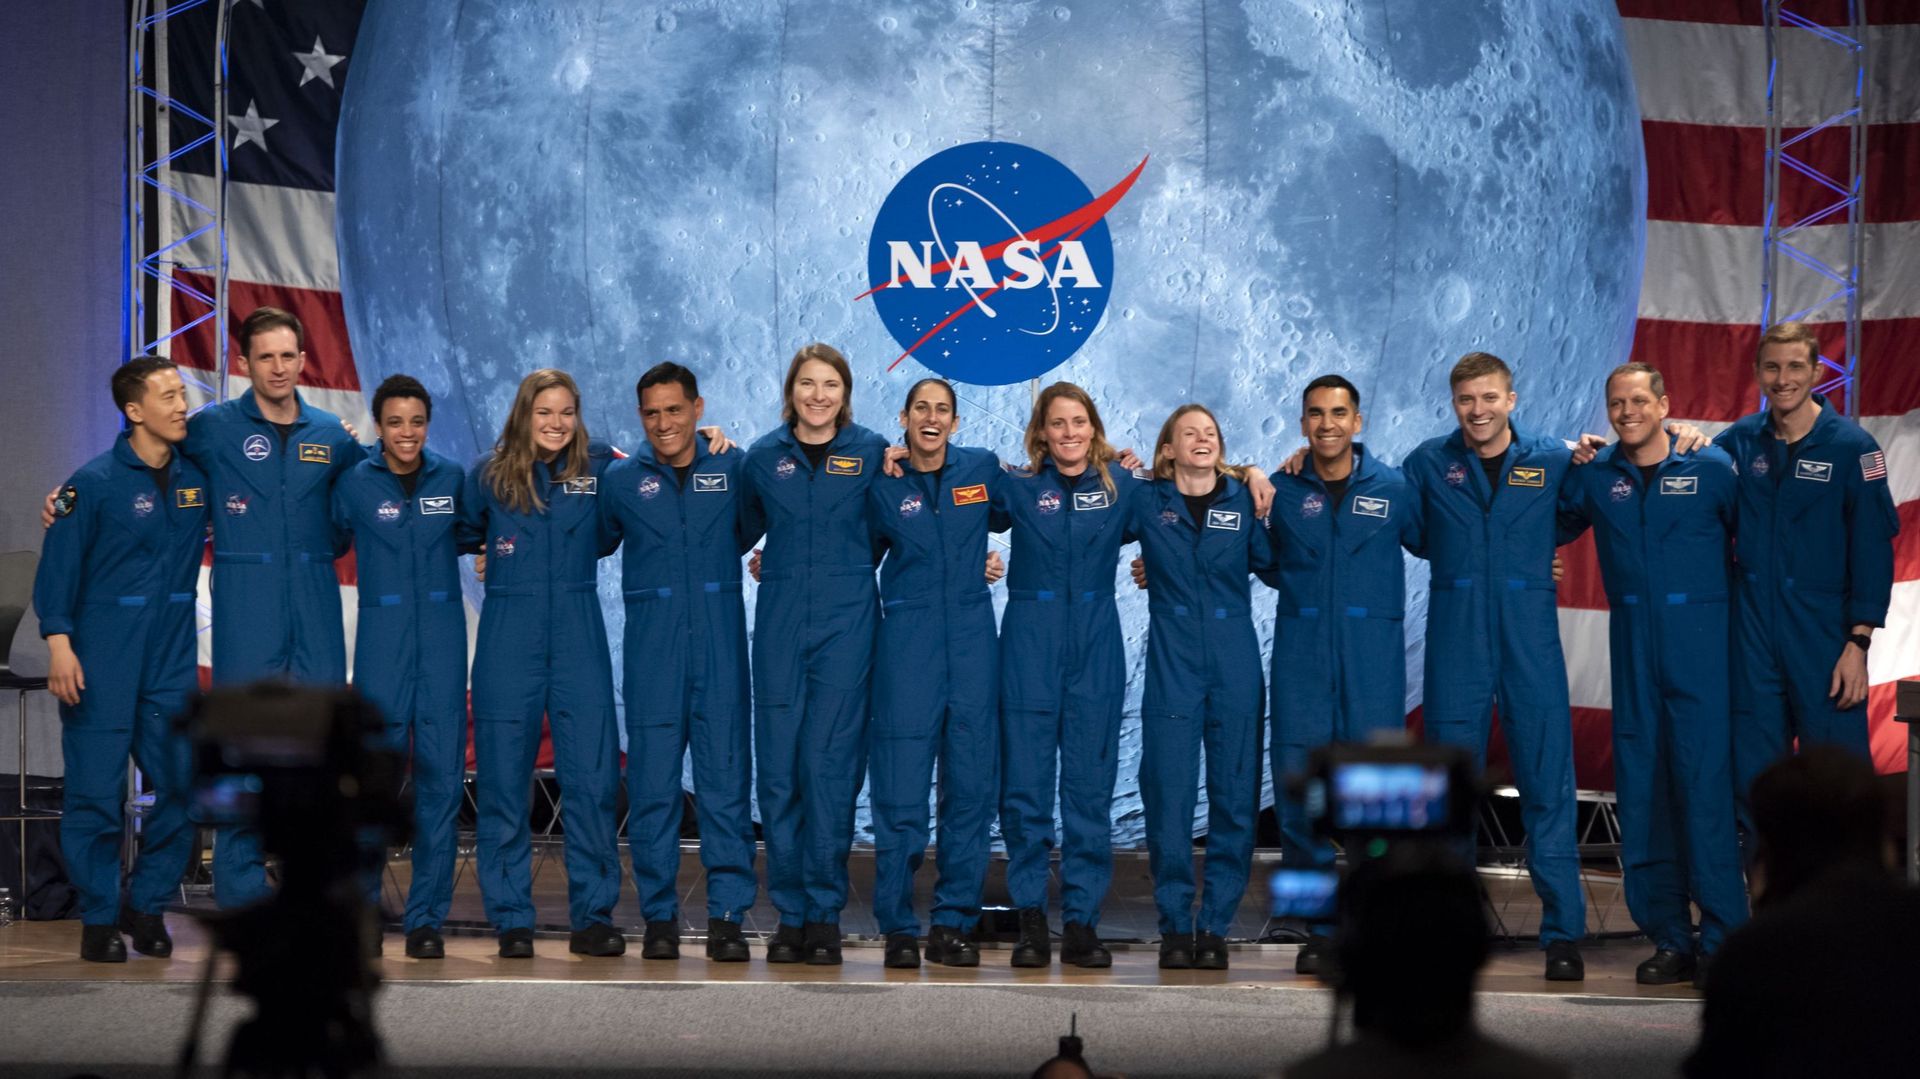 La nouvelle promotion d'astronautes recrutée par la Nasa en 2020 ira peut-être sur la Lune, dans le cadre du programme Artémis